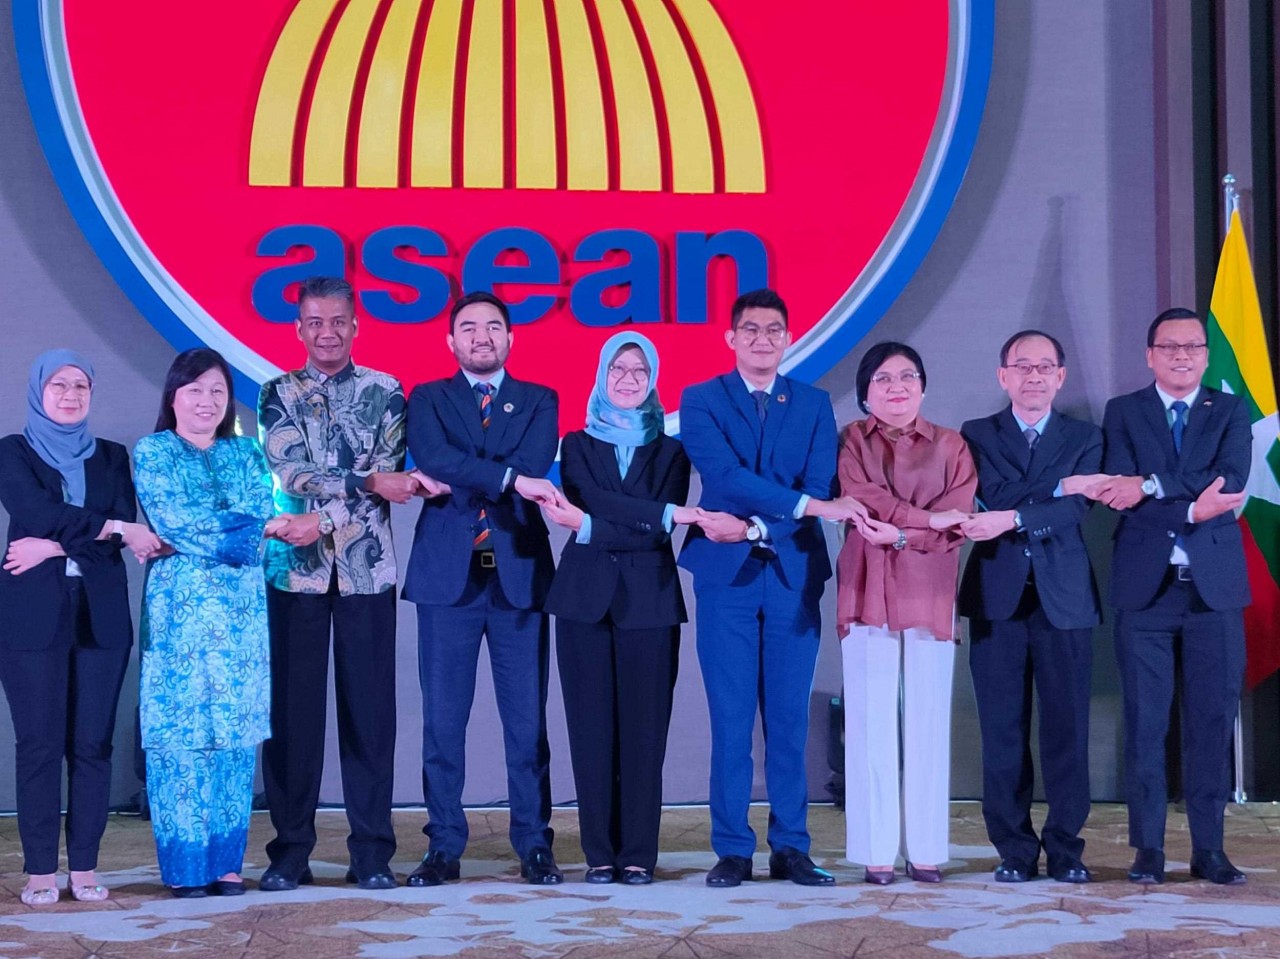 Hội nghị Thanh niên ASEAN năm 2023 với chủ đề “Thanh niên bảo vệ tương lai bền vững cho một ASEAN kiên cường” được tổ chức từ ngày 3-5/11 tại Jakarta. (Nguồn: Kemlui)